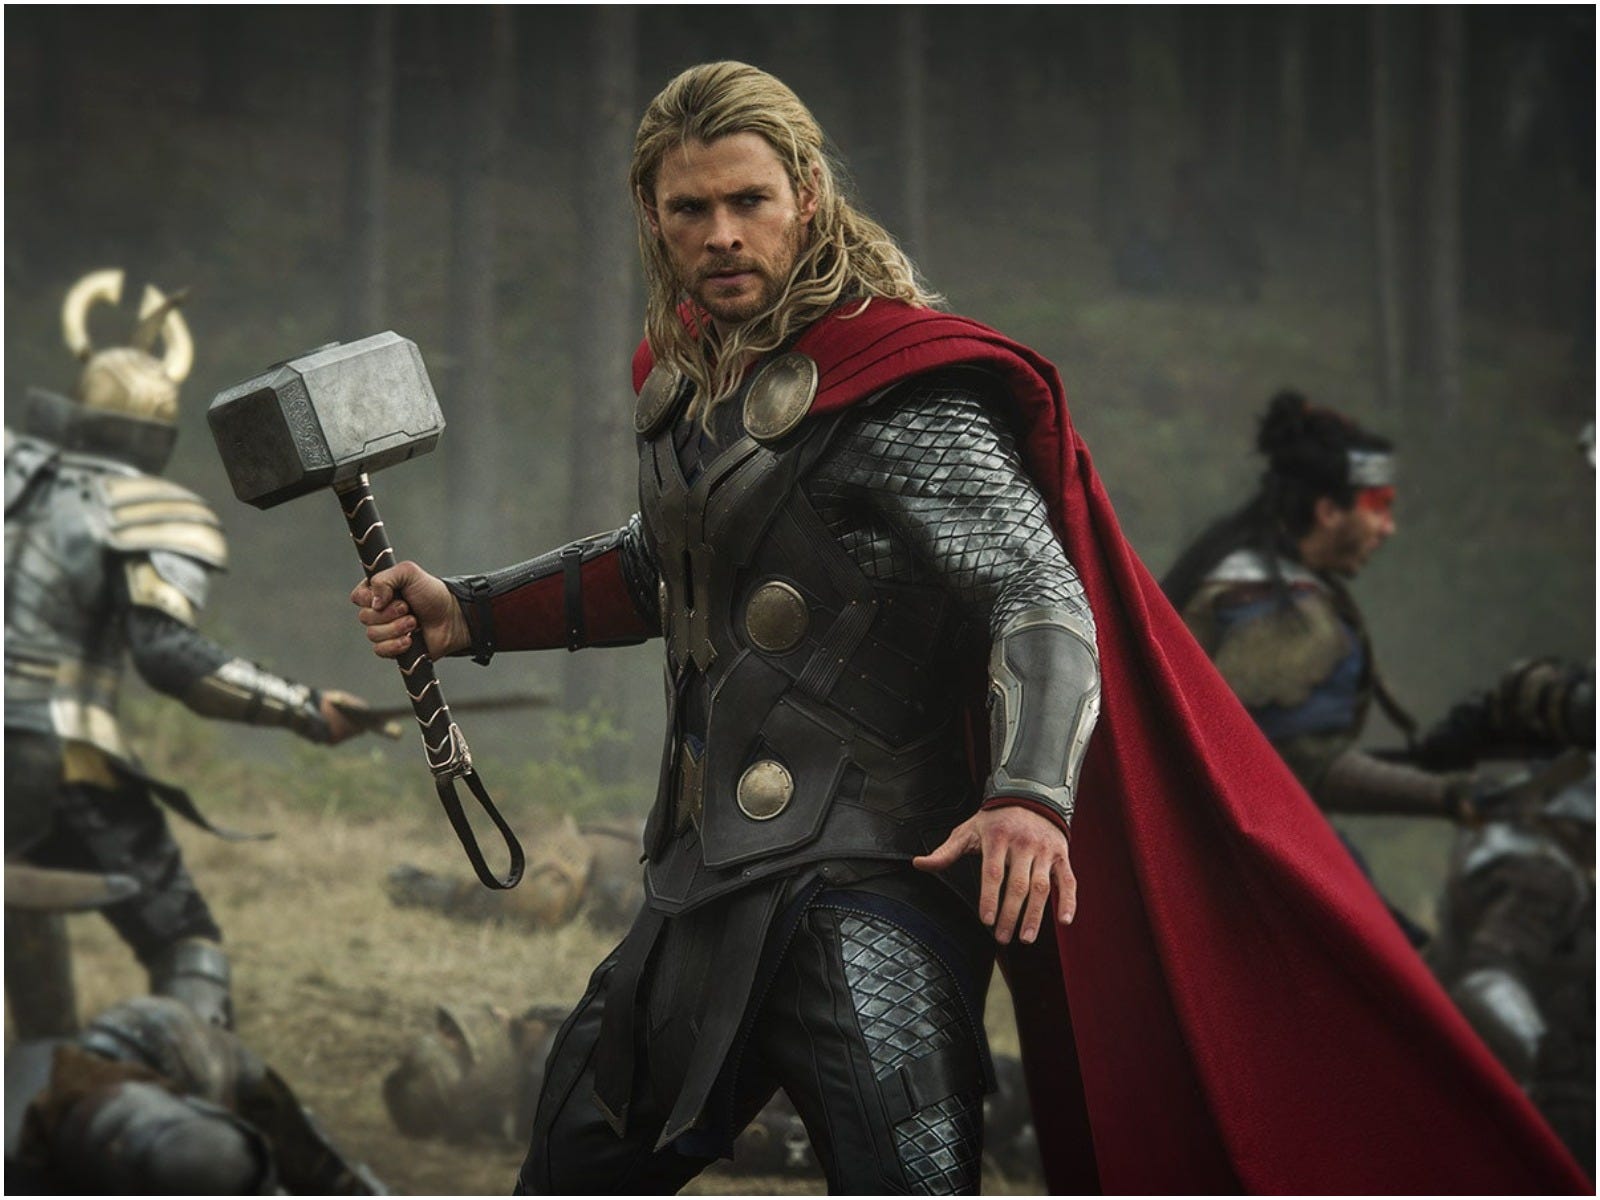 Thor: Die dunkle Welt